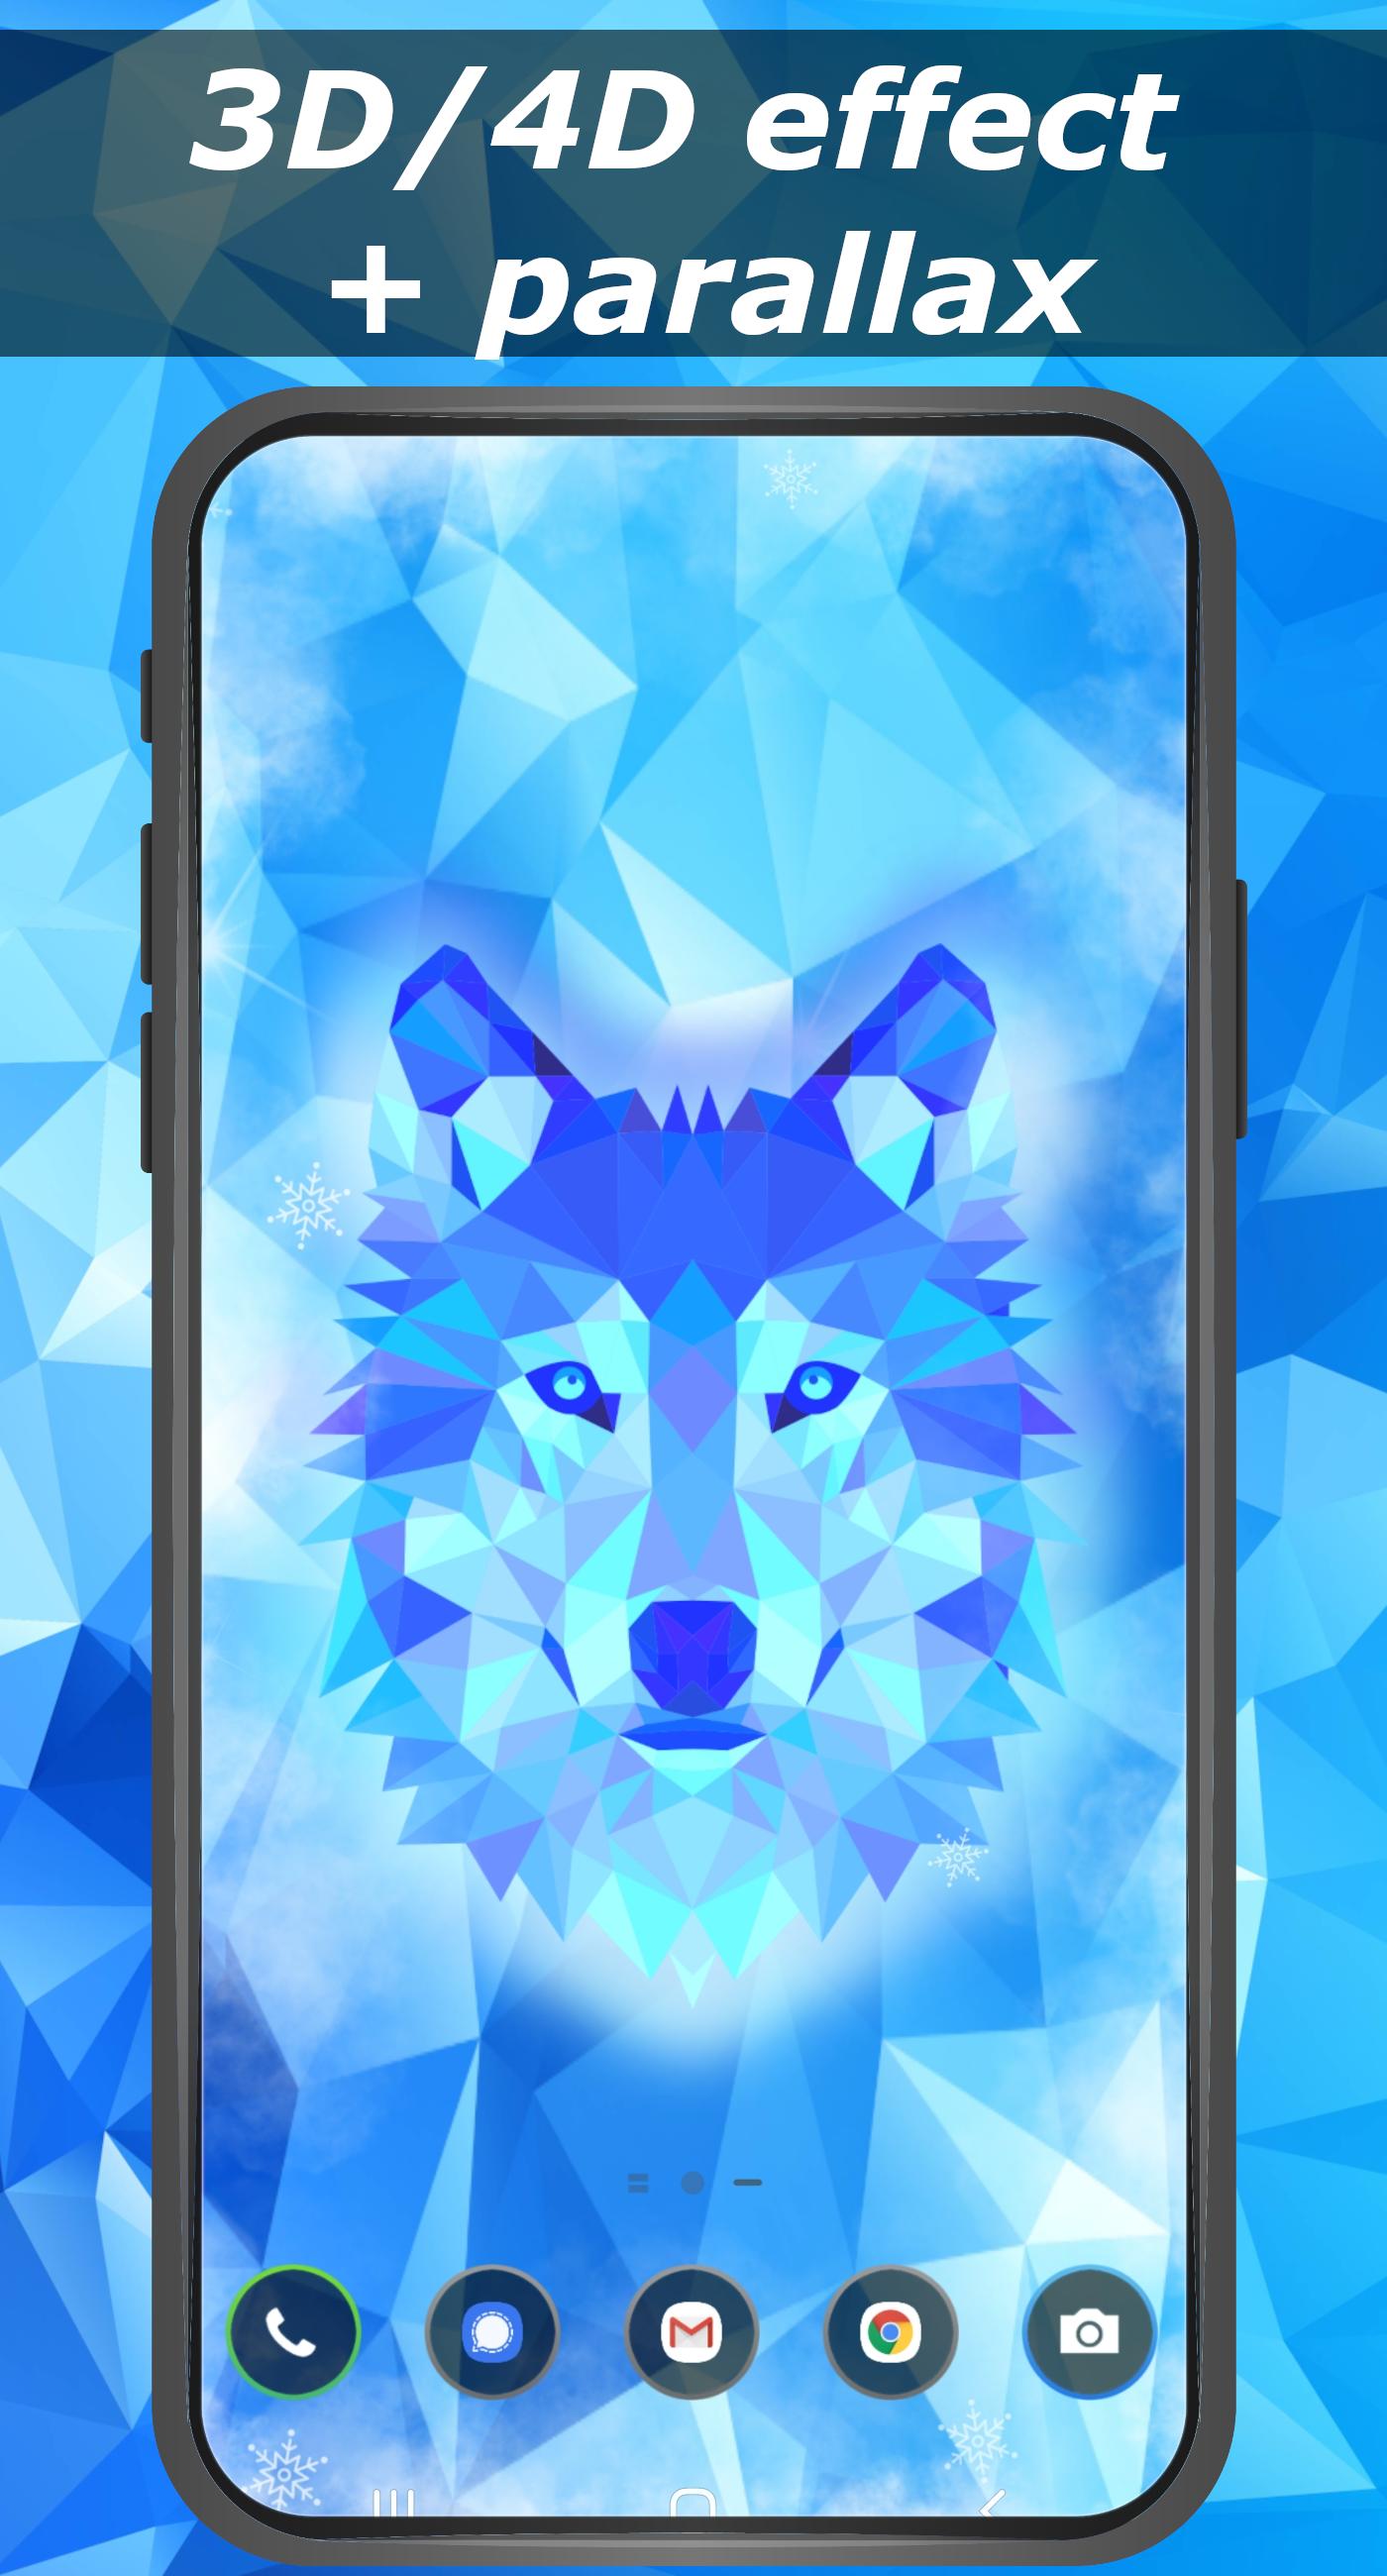 Ice wolf wallpaper 3D - parallax 4D backgrounds 1.0 Screenshot 6